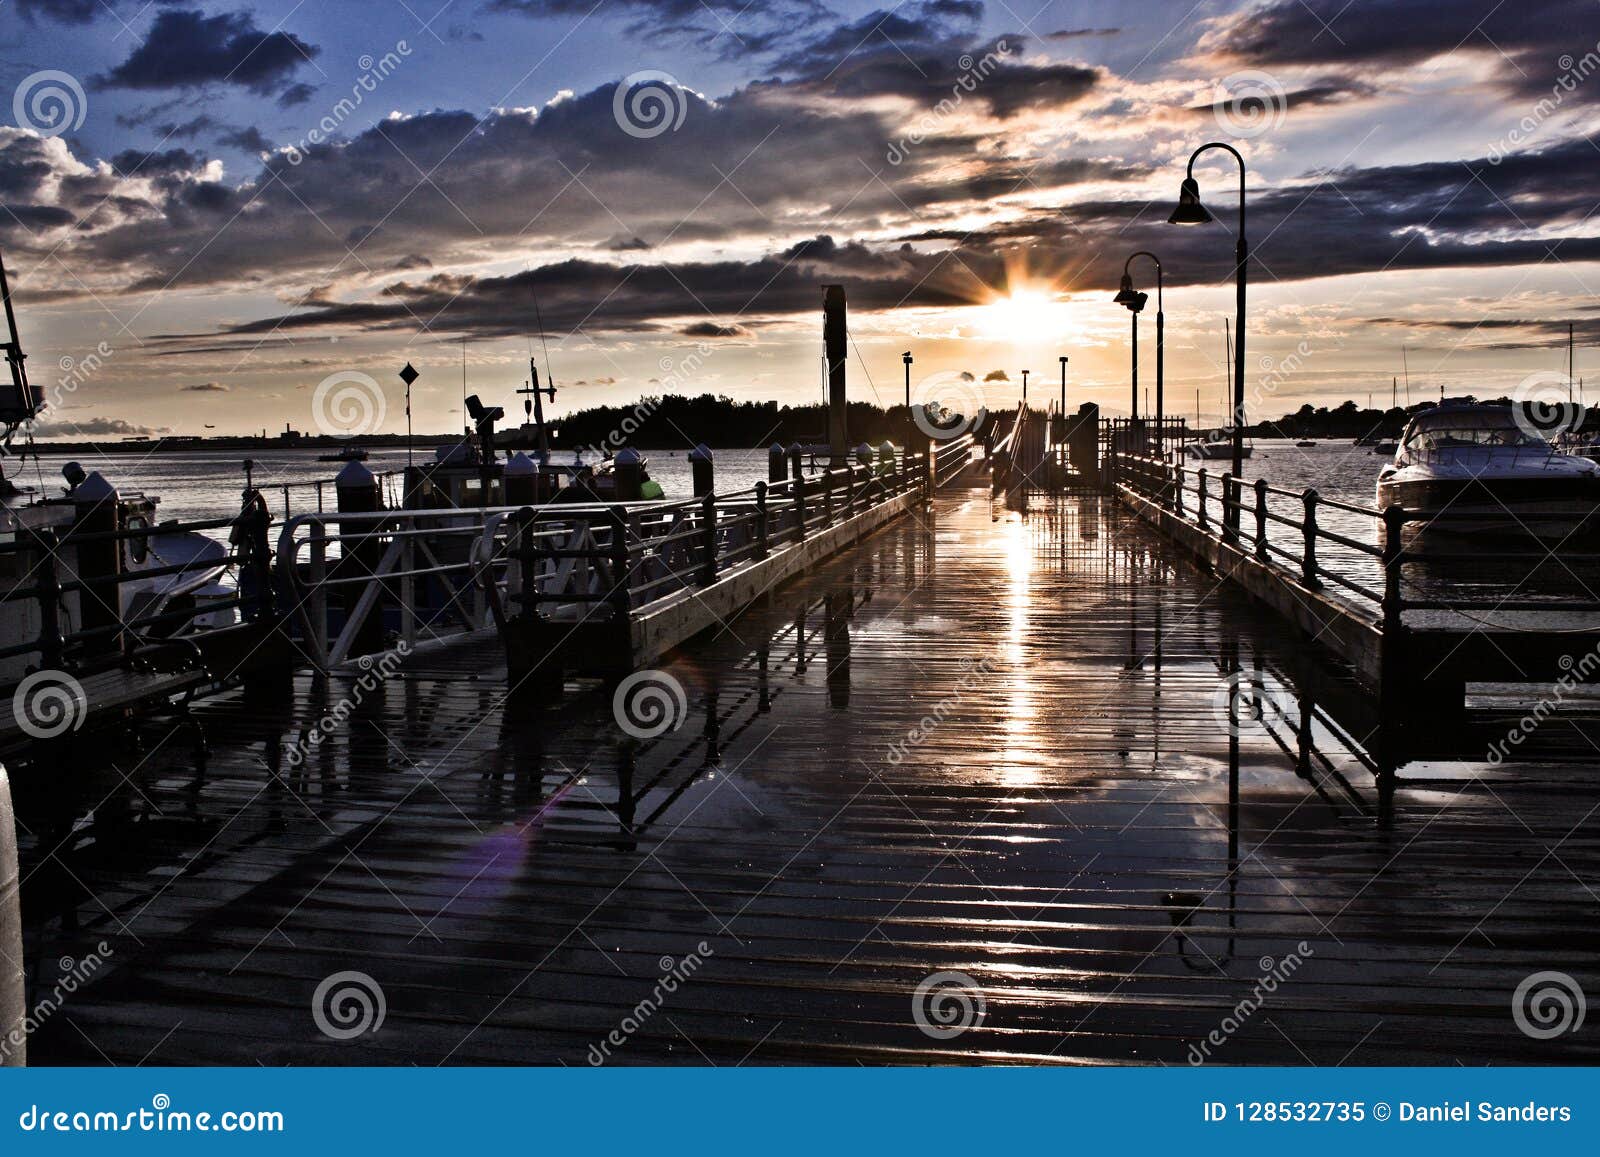 Sunset Light Reflecting on Wet Fishing Pier Stock Image - Image of